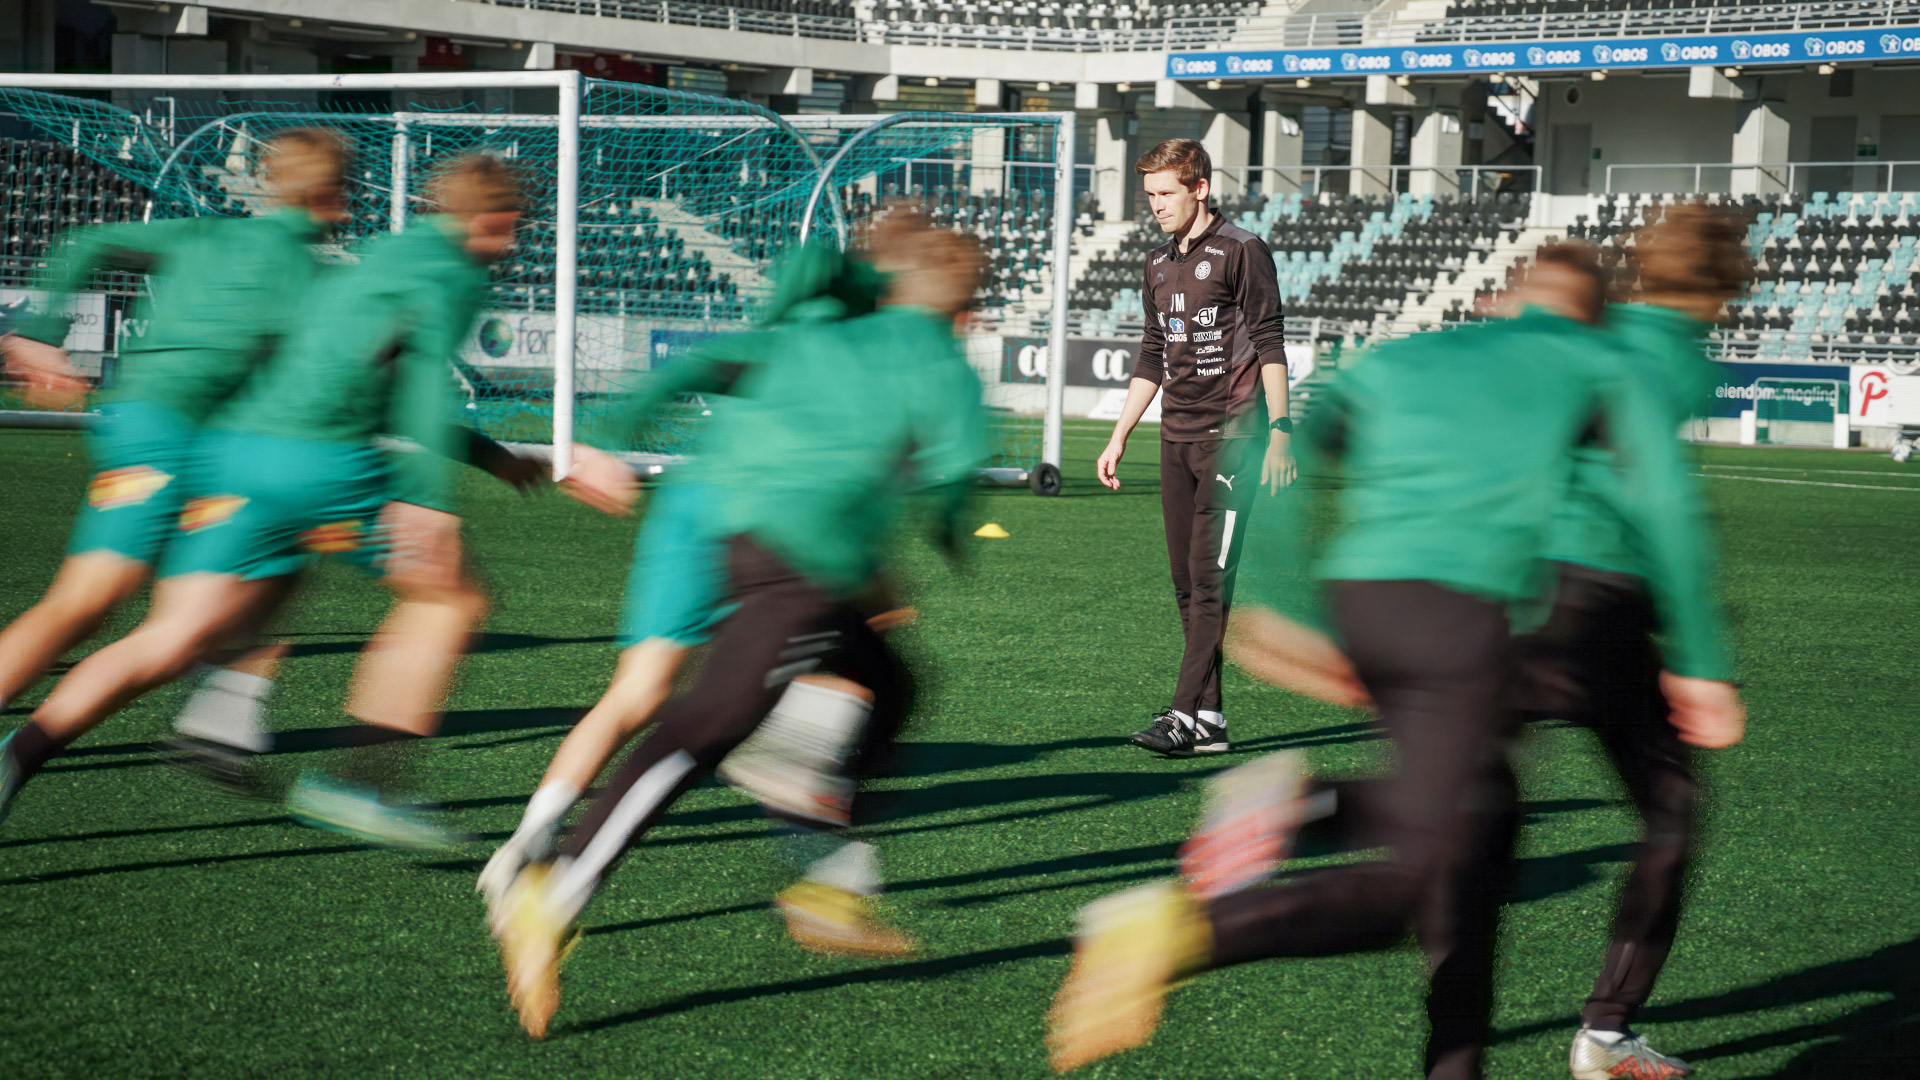 Mollatt i sort står midt inne i en flokk grønnkledde fotballspillere som løper over banen.